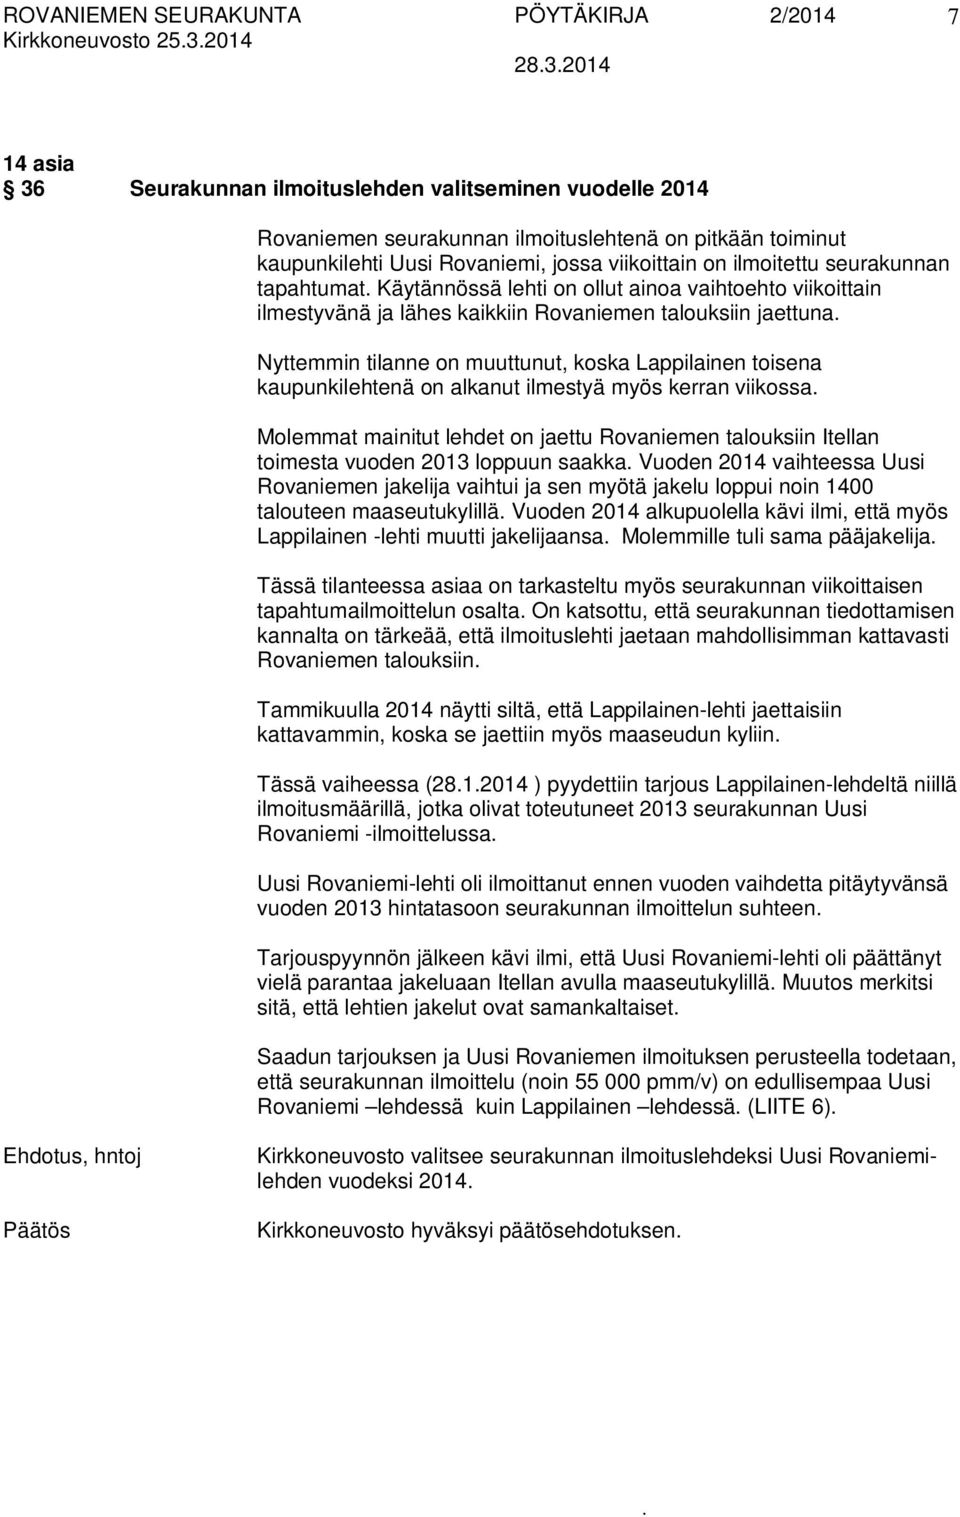 koska Lappilainen toisena kaupunkilehtenä on alkanut ilmestyä myös kerran viikossa Molemmat mainitut lehdet on jaettu Rovaniemen talouksiin Itellan toimesta vuoden 2013 loppuun saakka Vuoden 2014